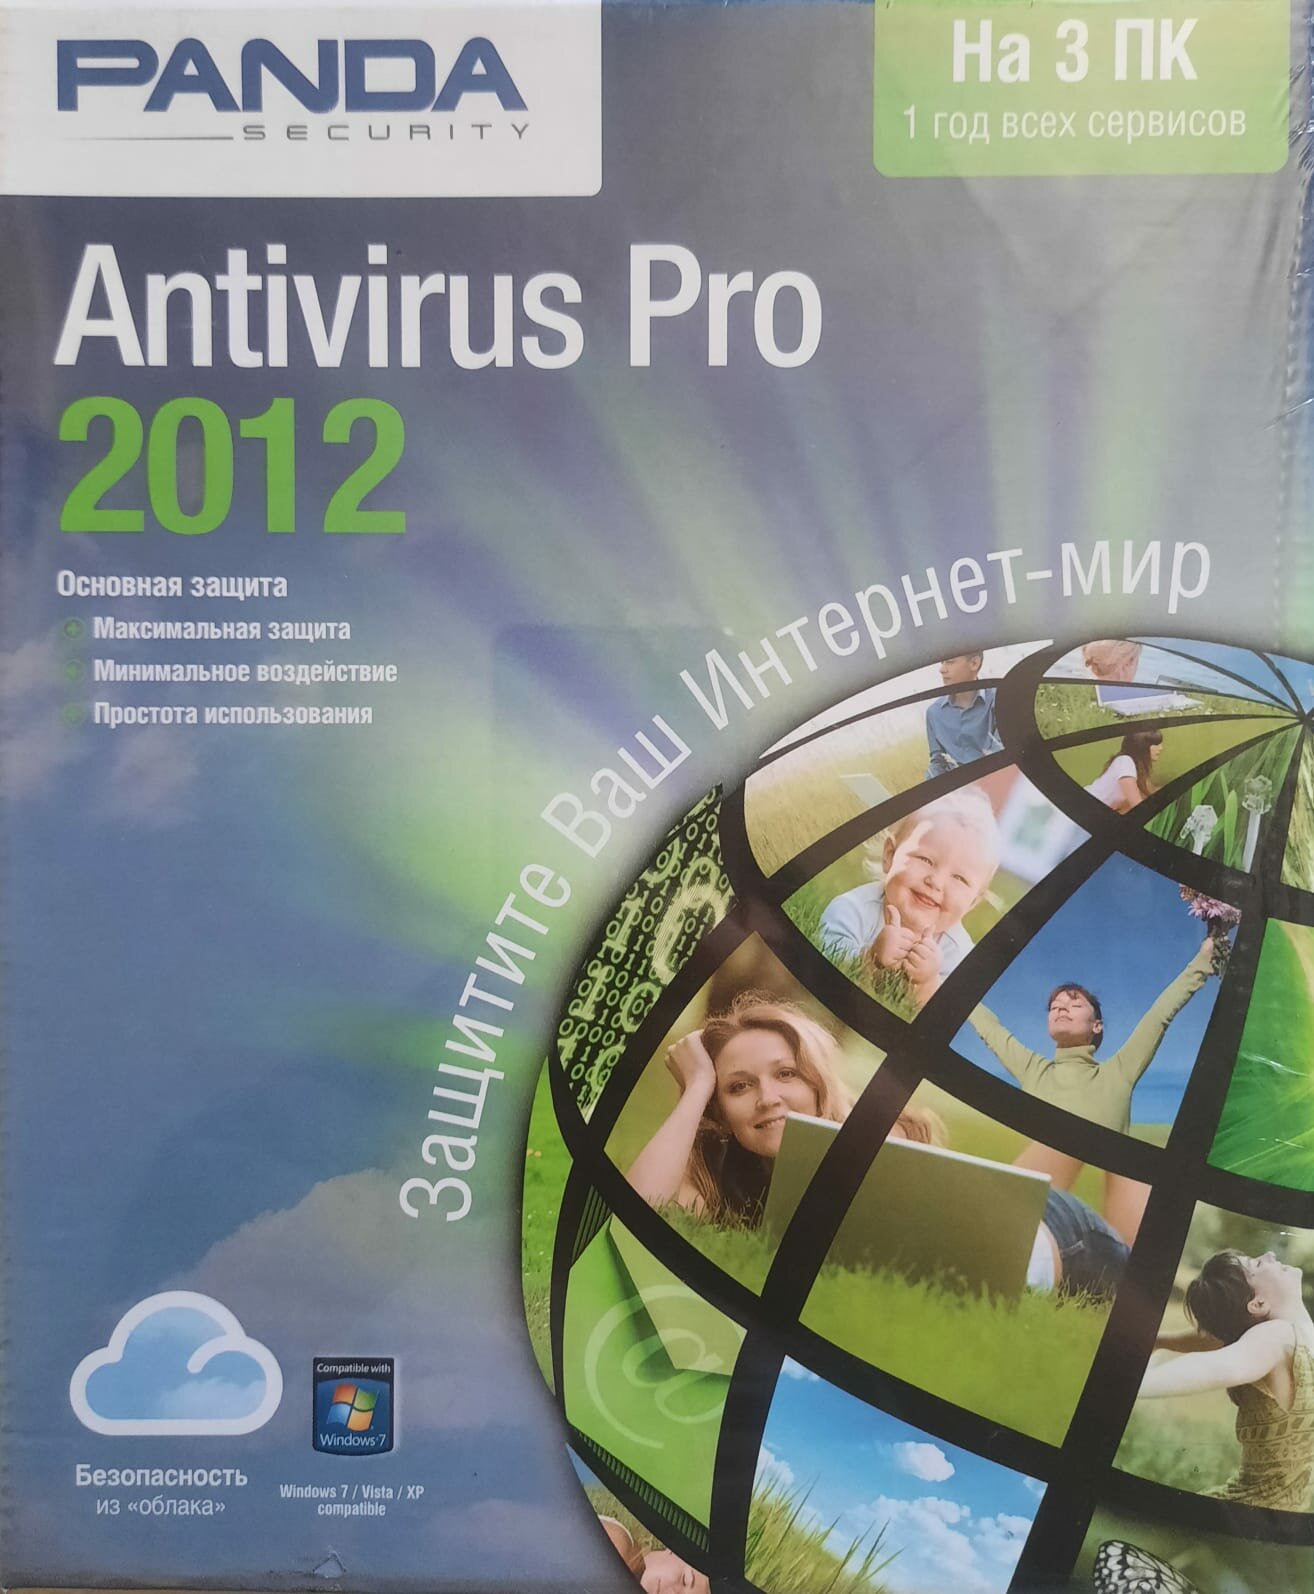 Антивирус Panda Antivirus Pro 2012 - Retail Box - на 3 ПК - (подписка на 1 год)